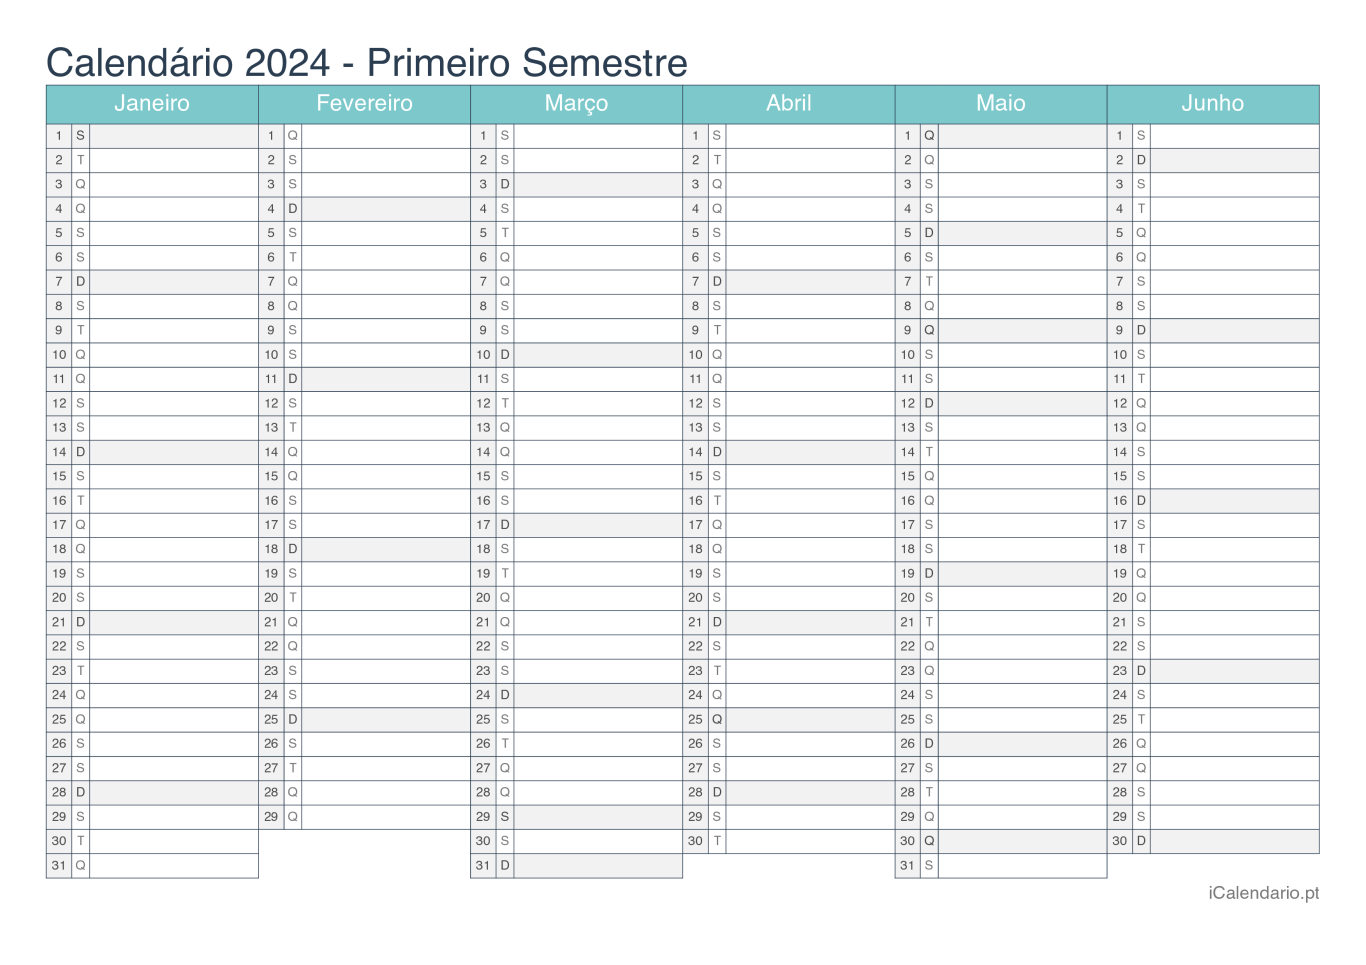 Calendário por semestre 2024 - Turquesa